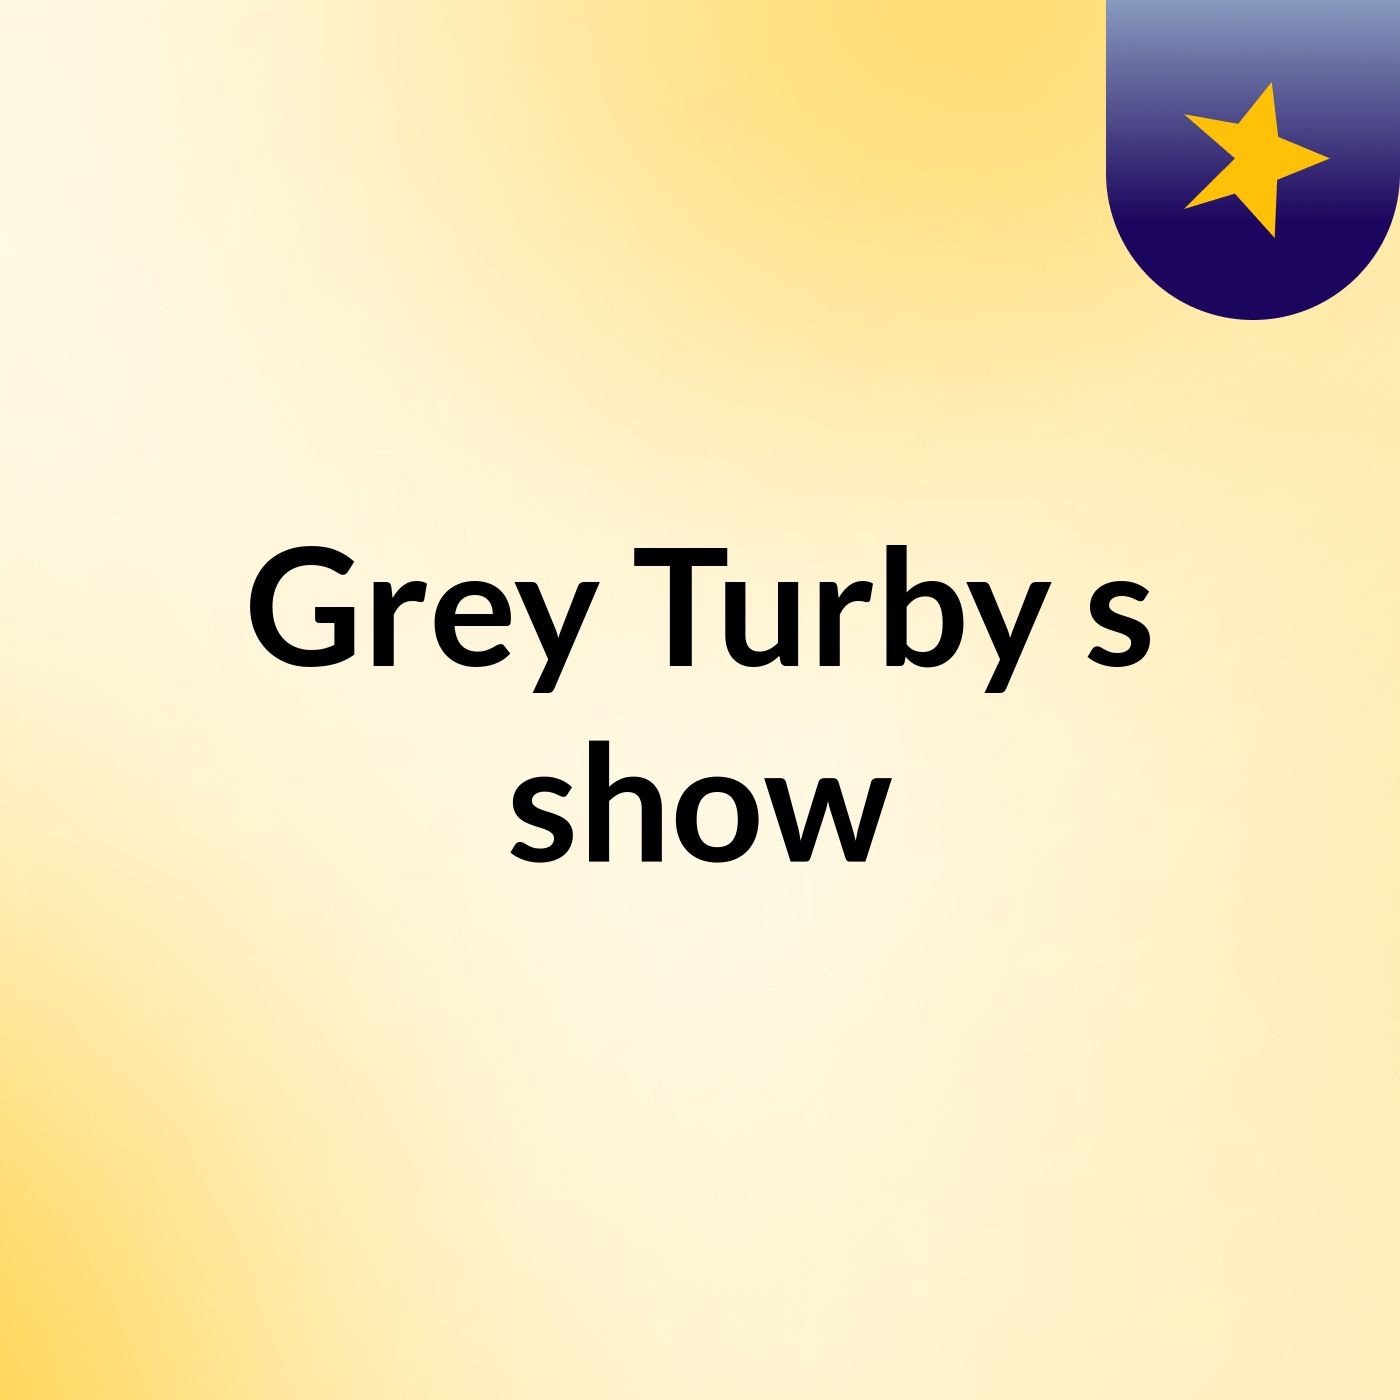 Grey Turby's show